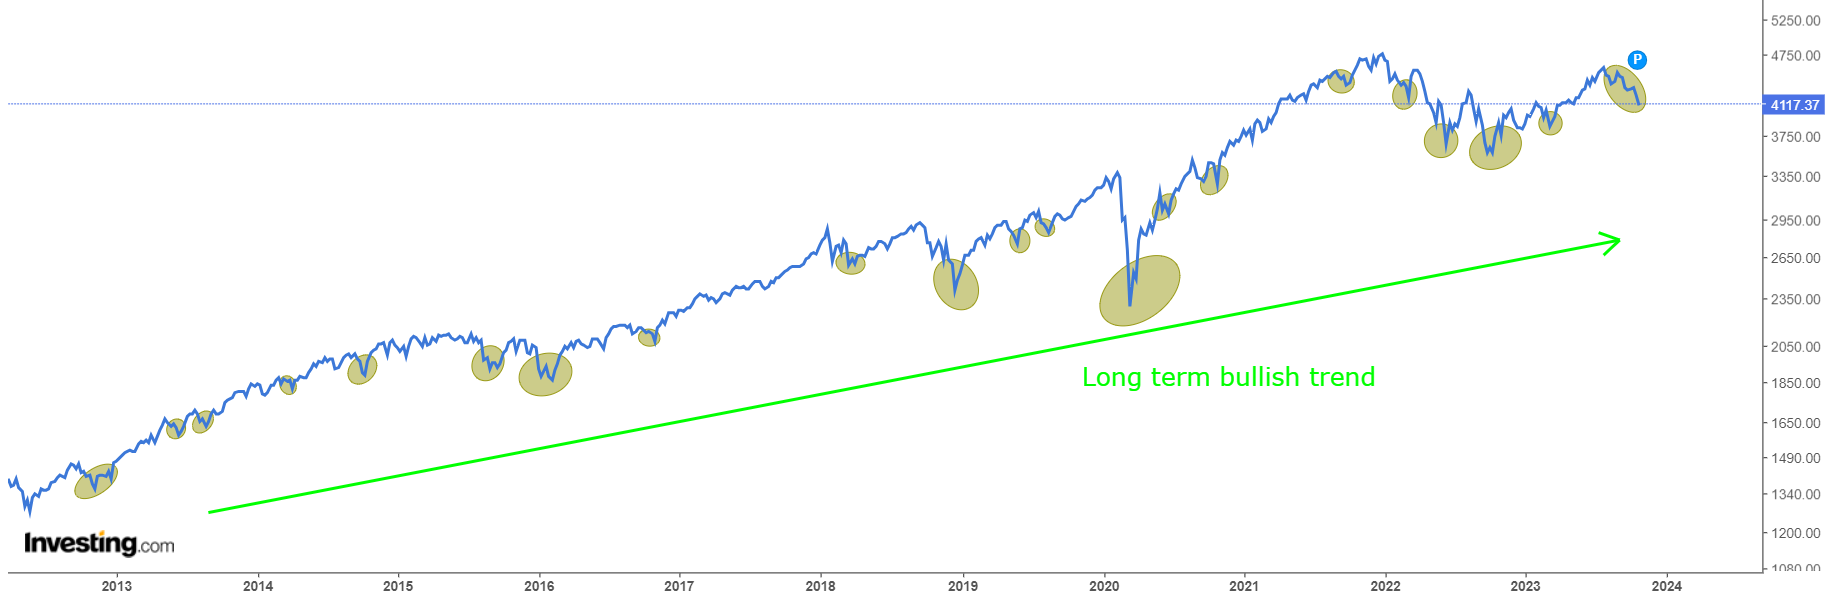 Tendência de alta de longo prazo no S&P 500